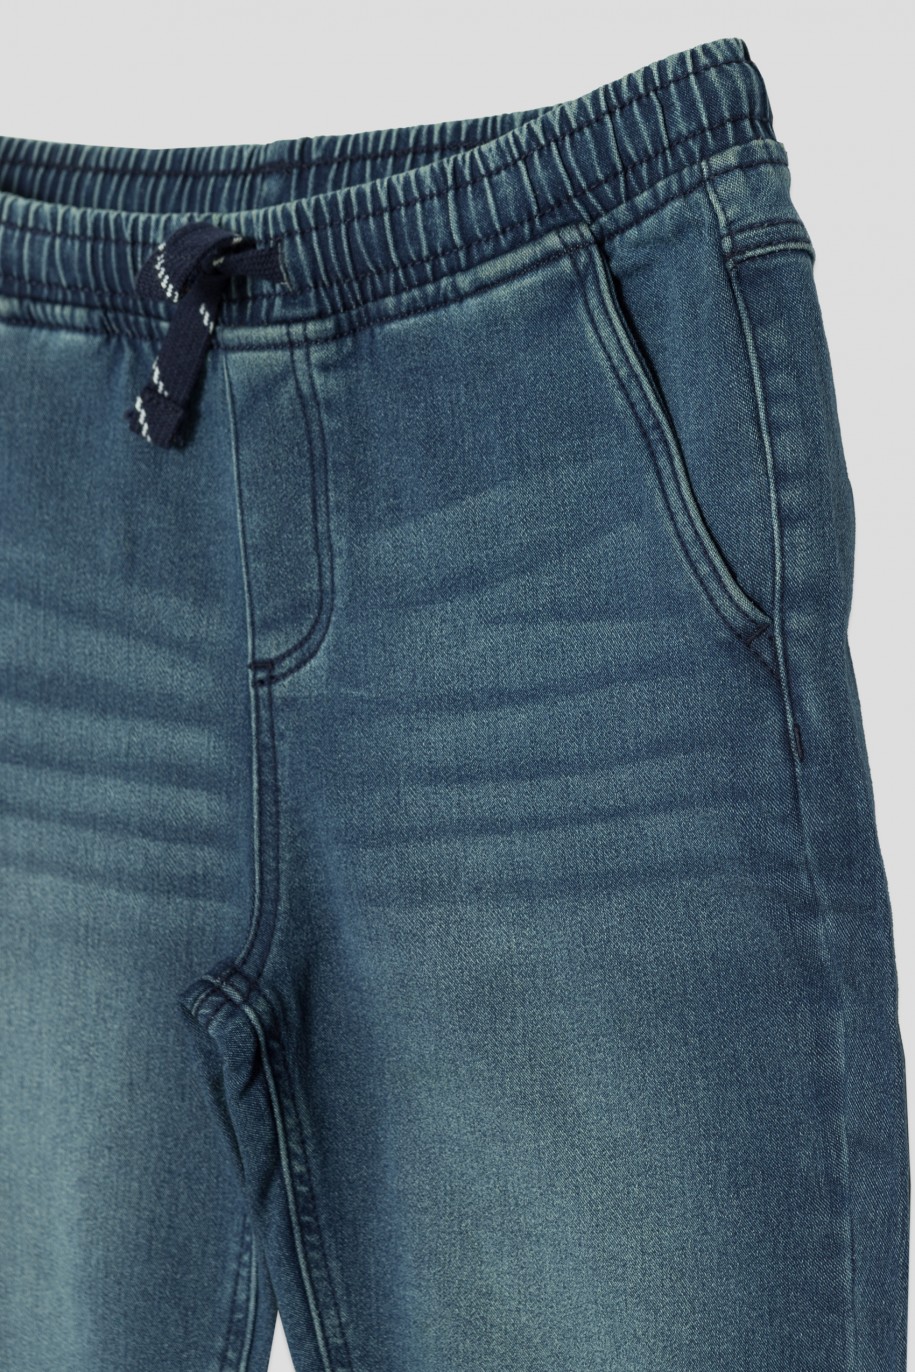 Krótkie niebieskie jeansowe spodenki dla chłopaka - 41208